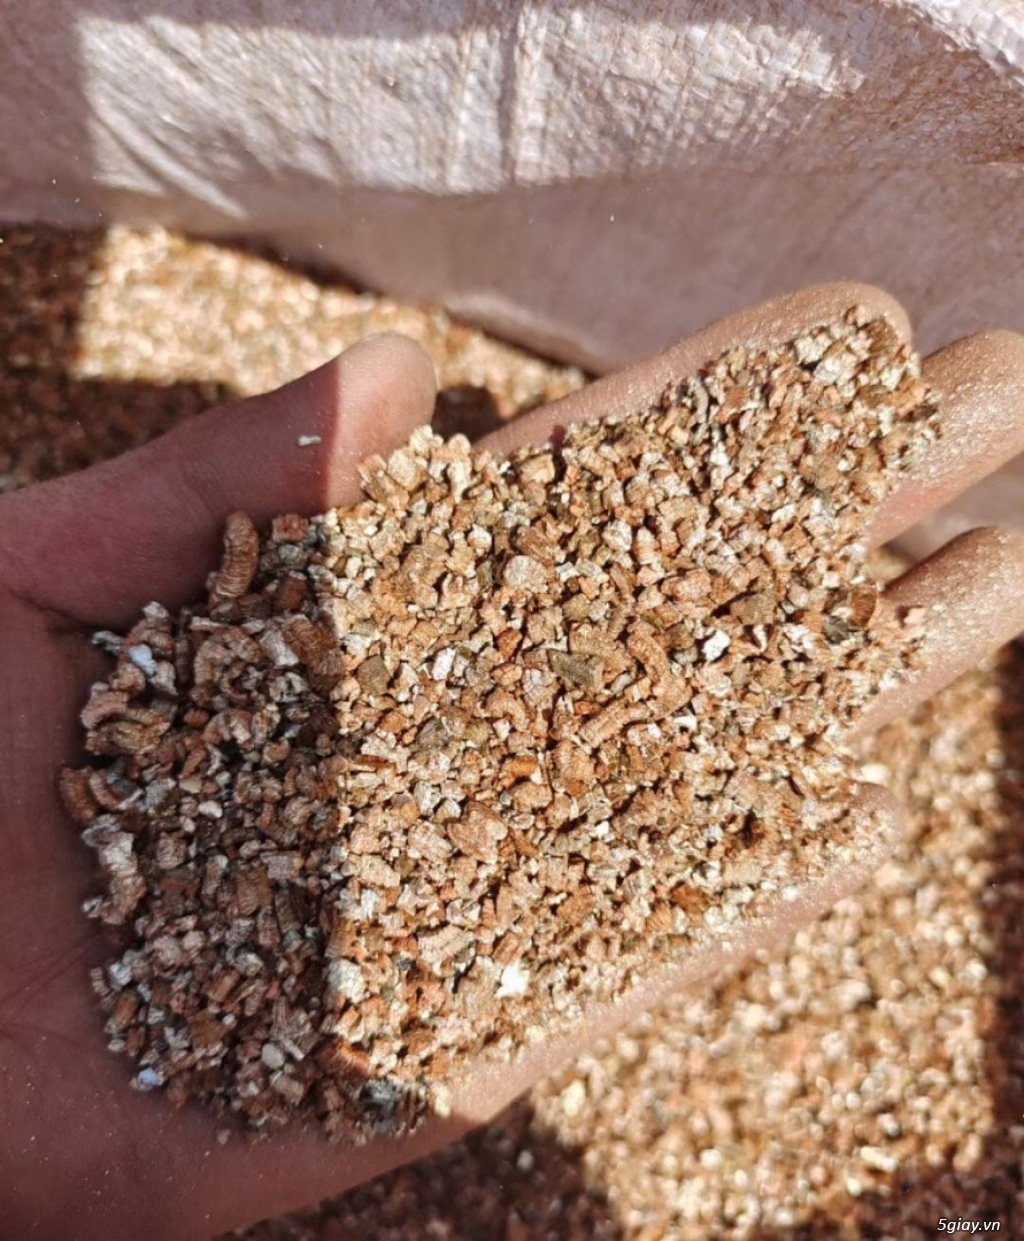 Cung cấp số lượng lớn Vermiculite làm vườn, xây dựng, công nghiệp - 6